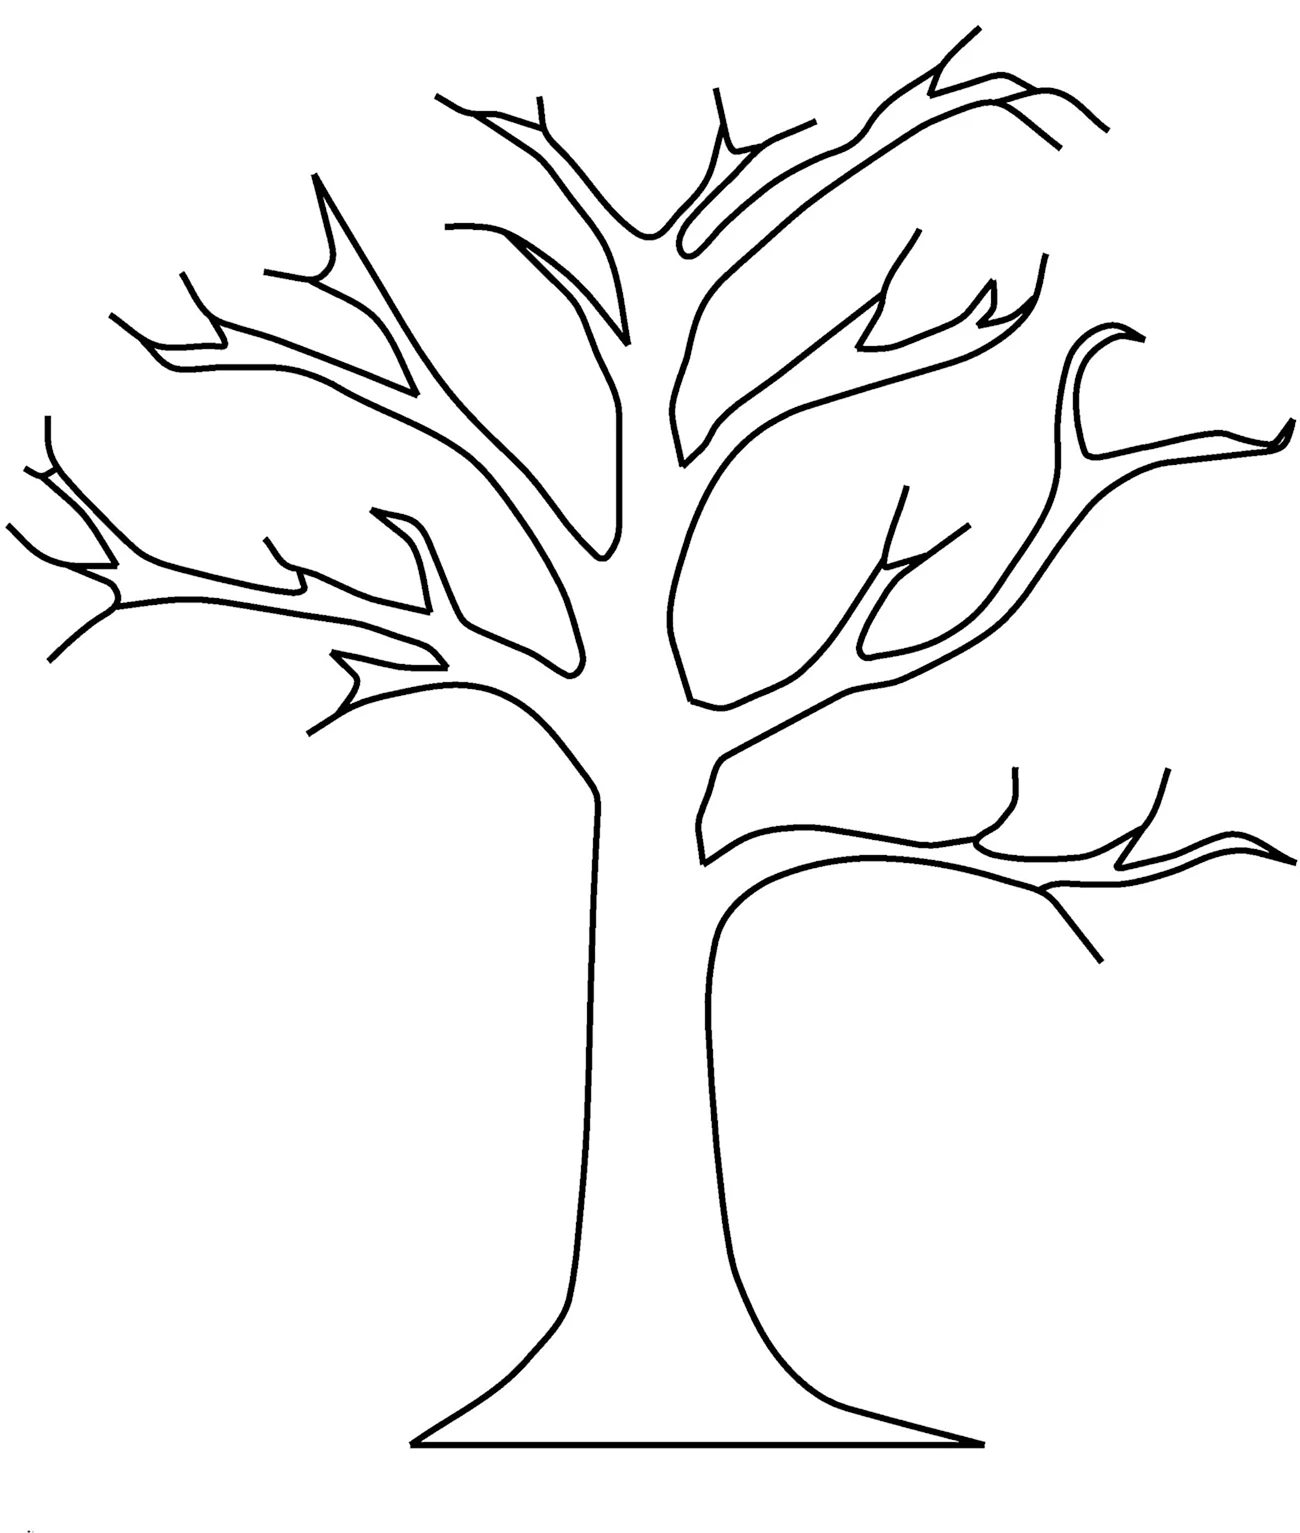 Раскраска дерево без листьев. Картинка